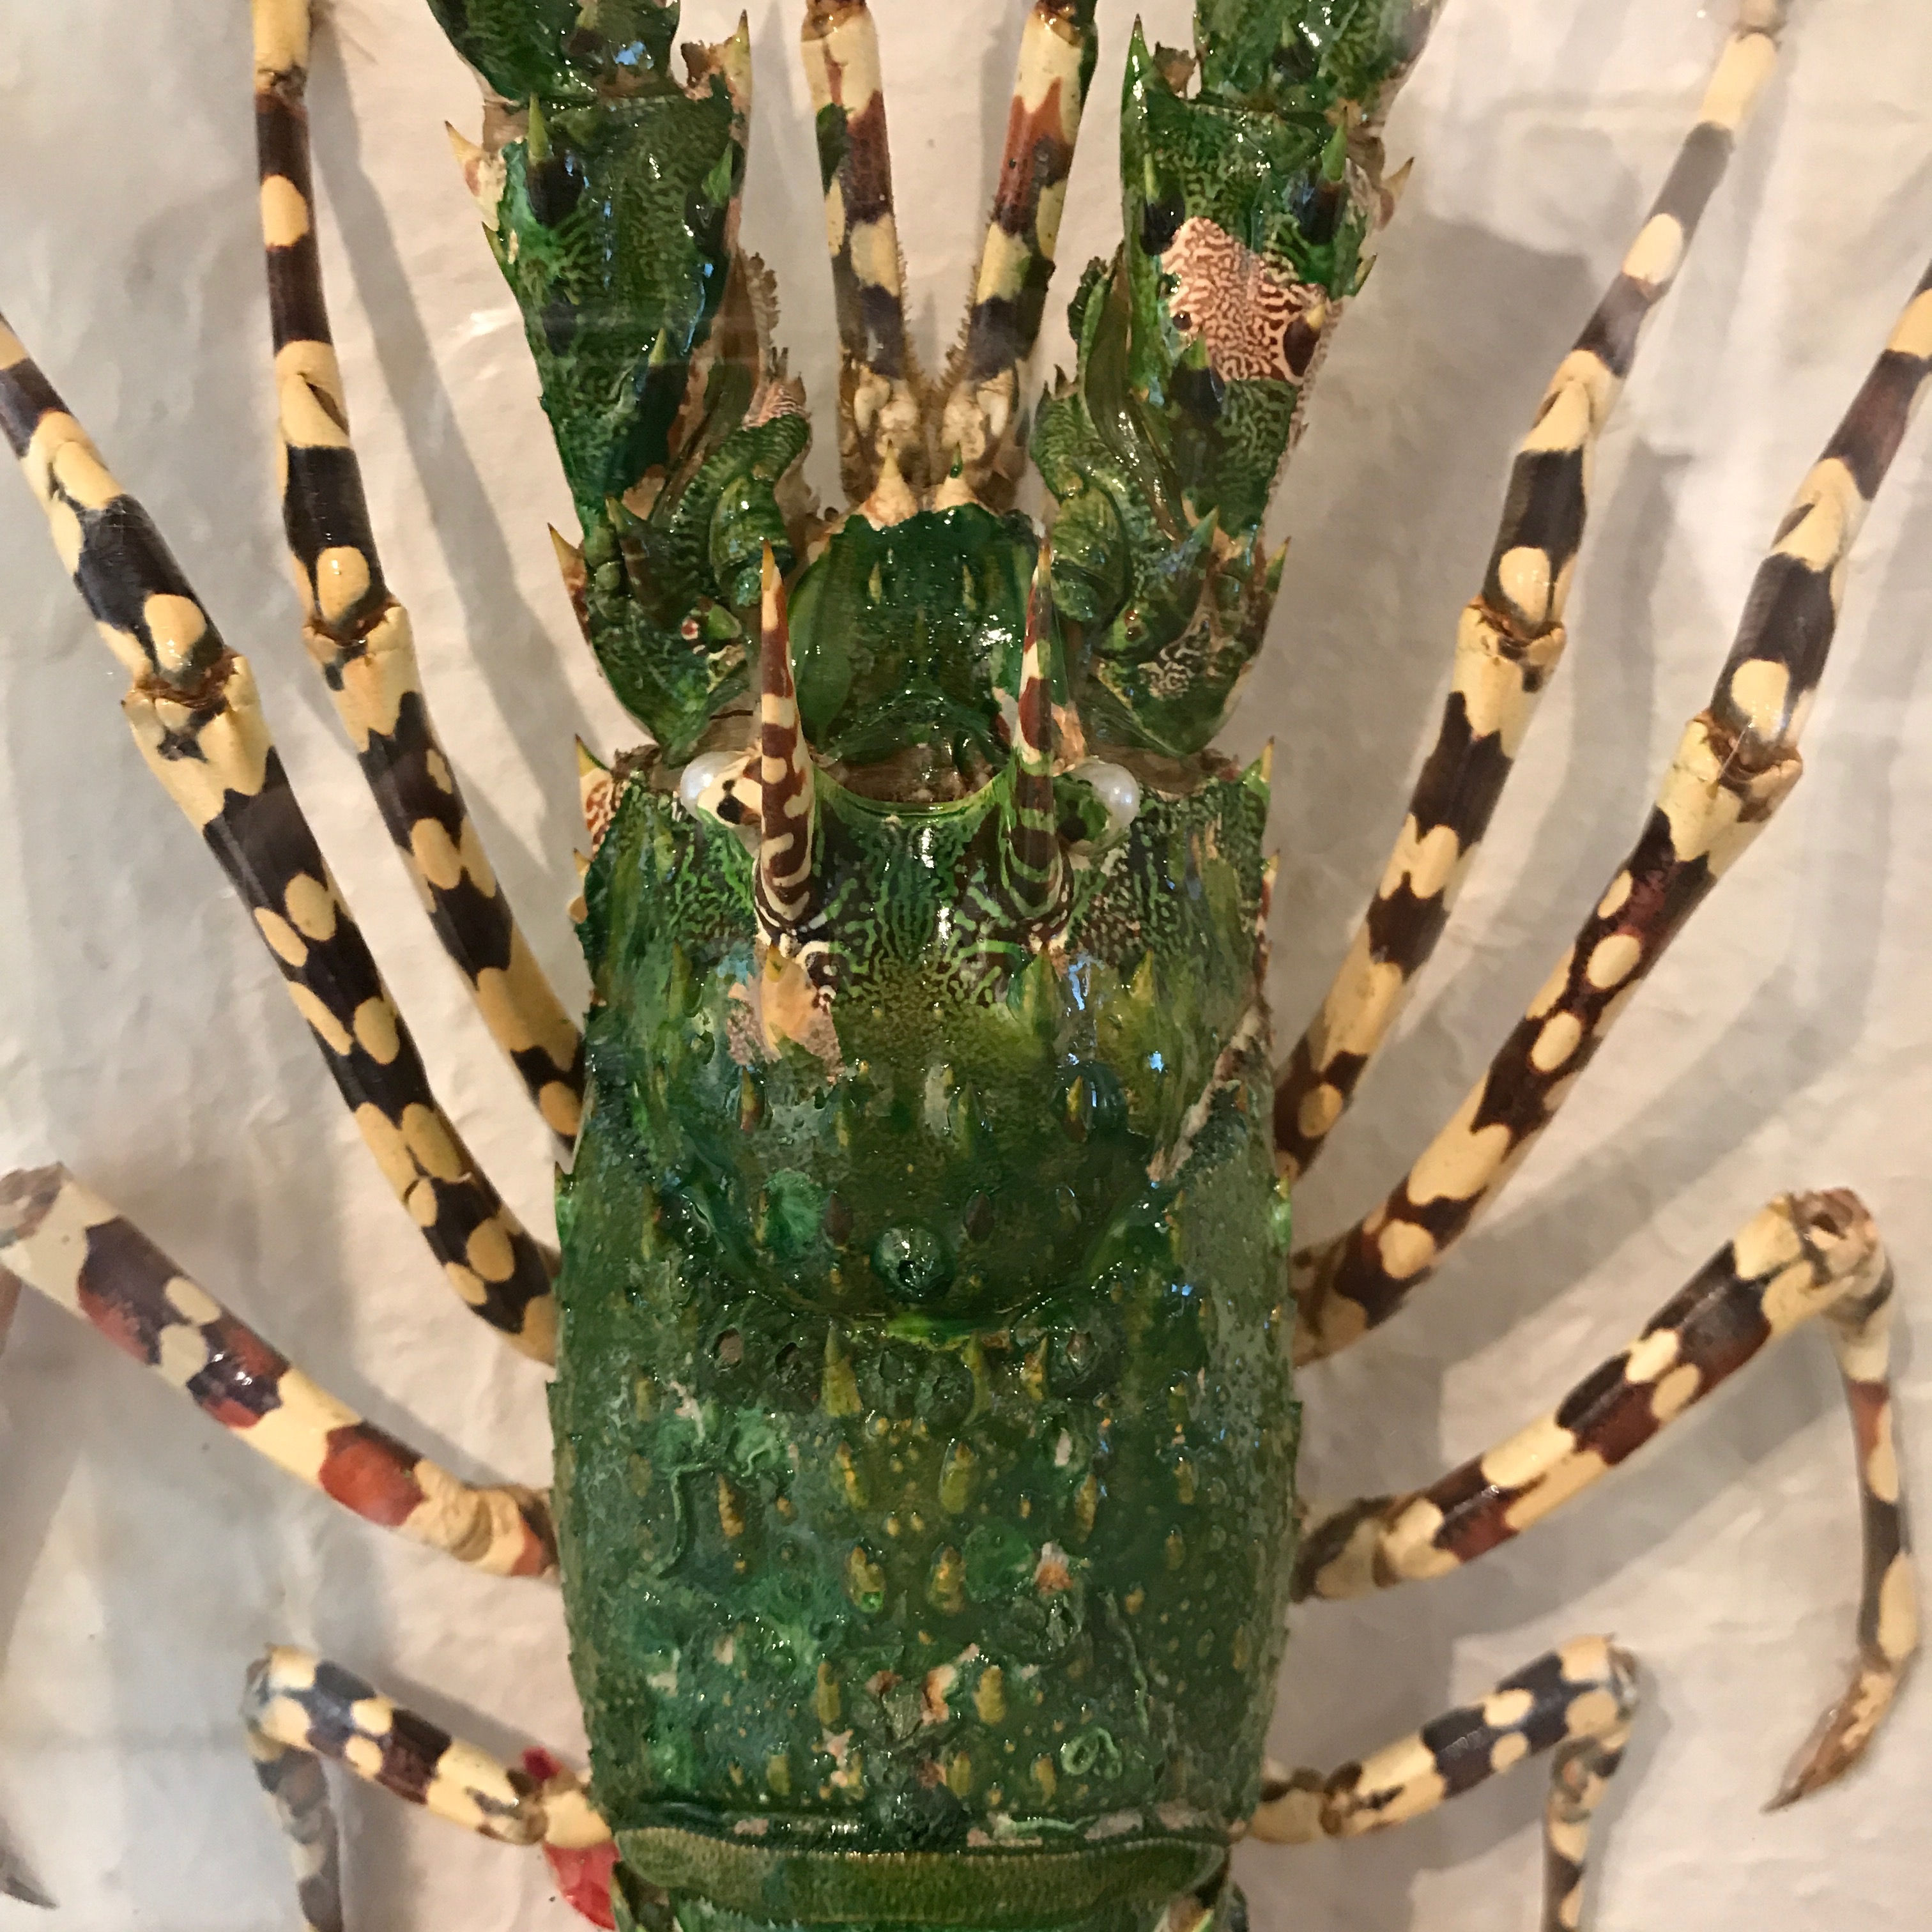 Green lobster